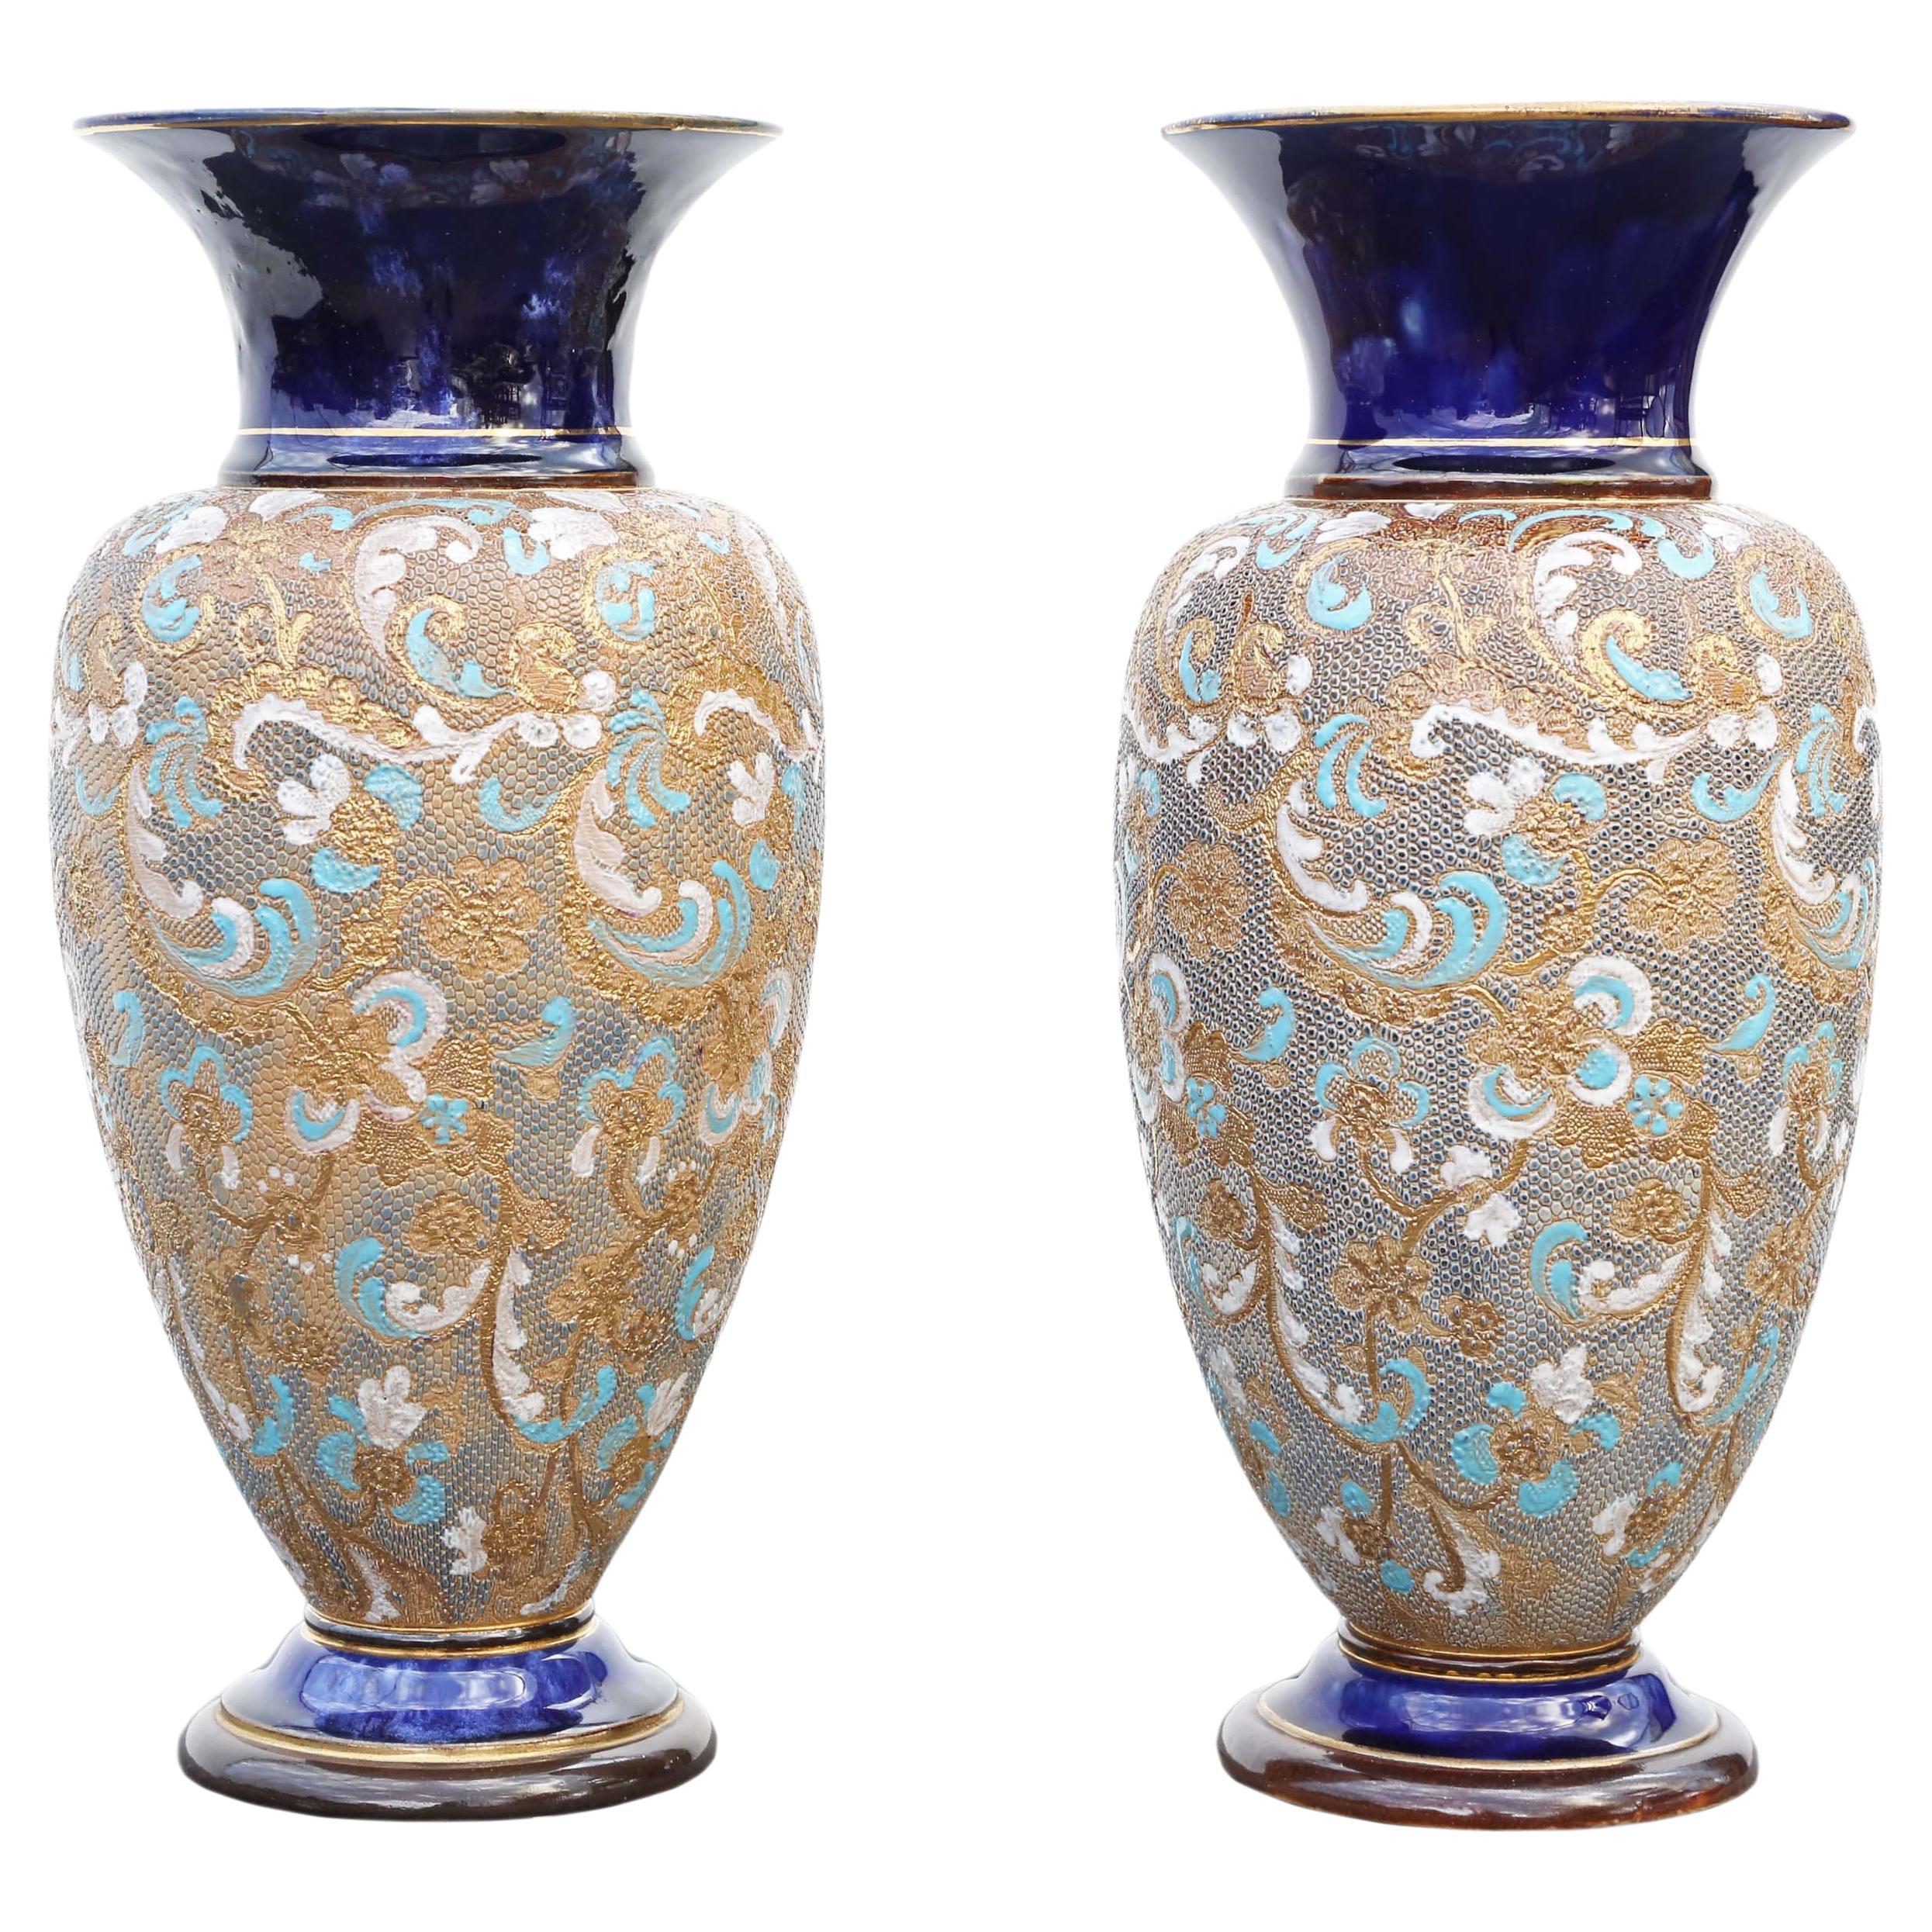 Antique large pair of Art Nouveau Royal Doulton Slater vases